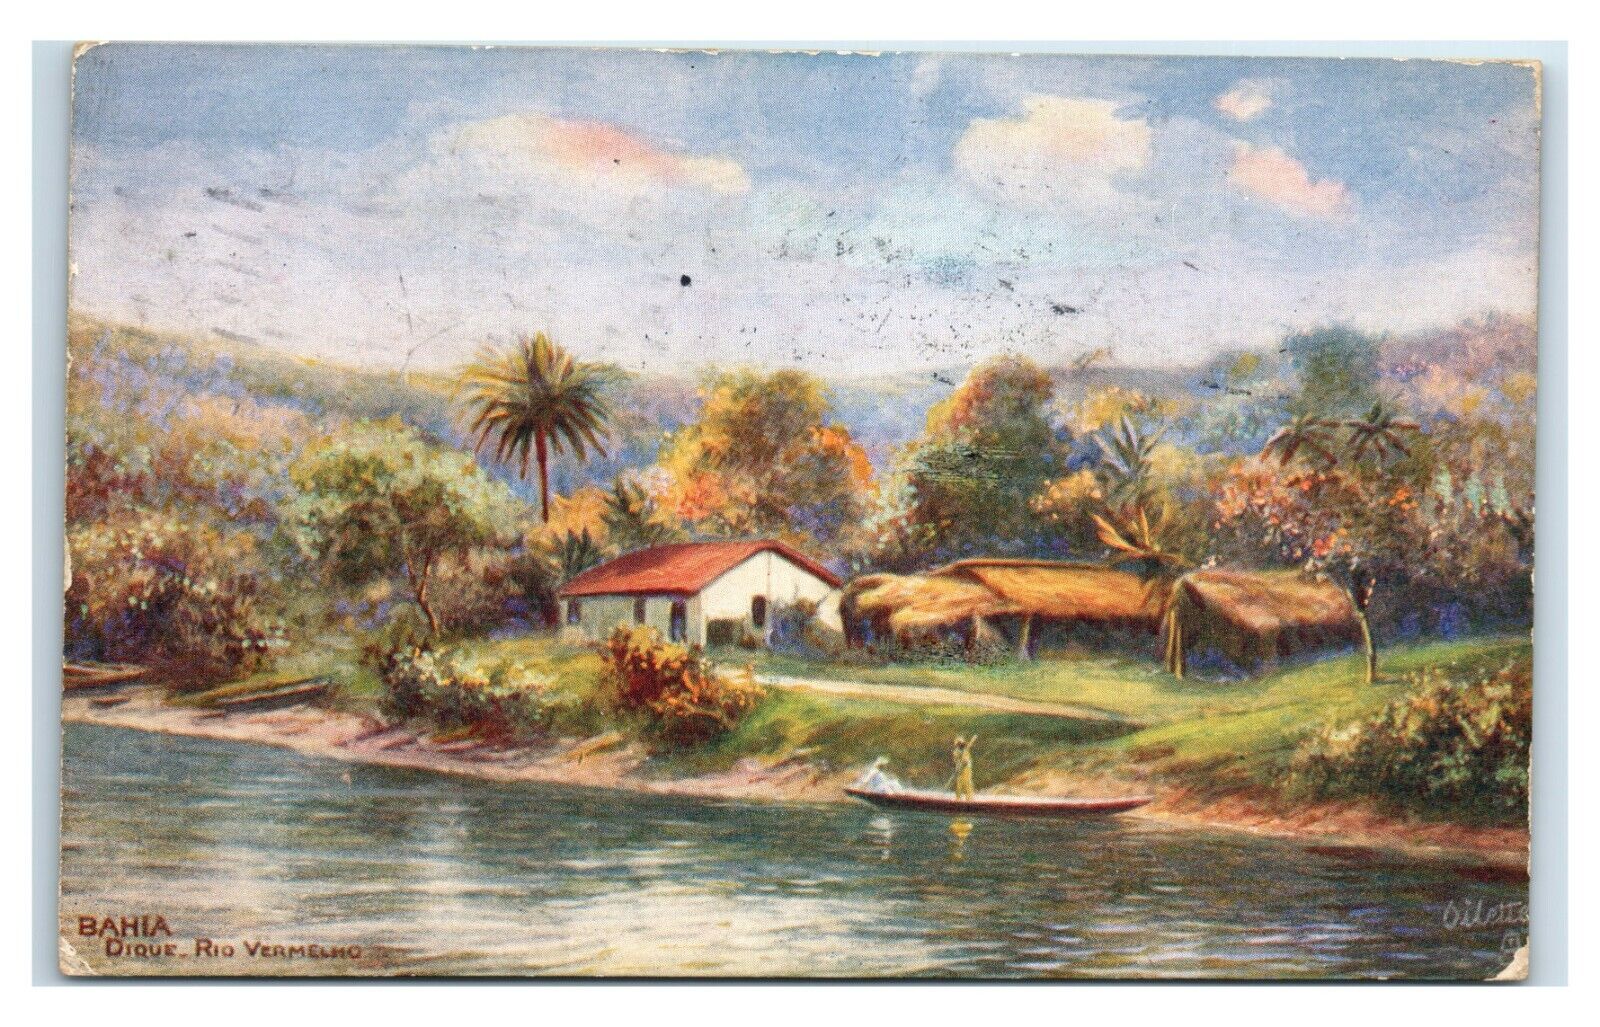 Postcard Bahia, Dique Rio Vermelho 1923 U83